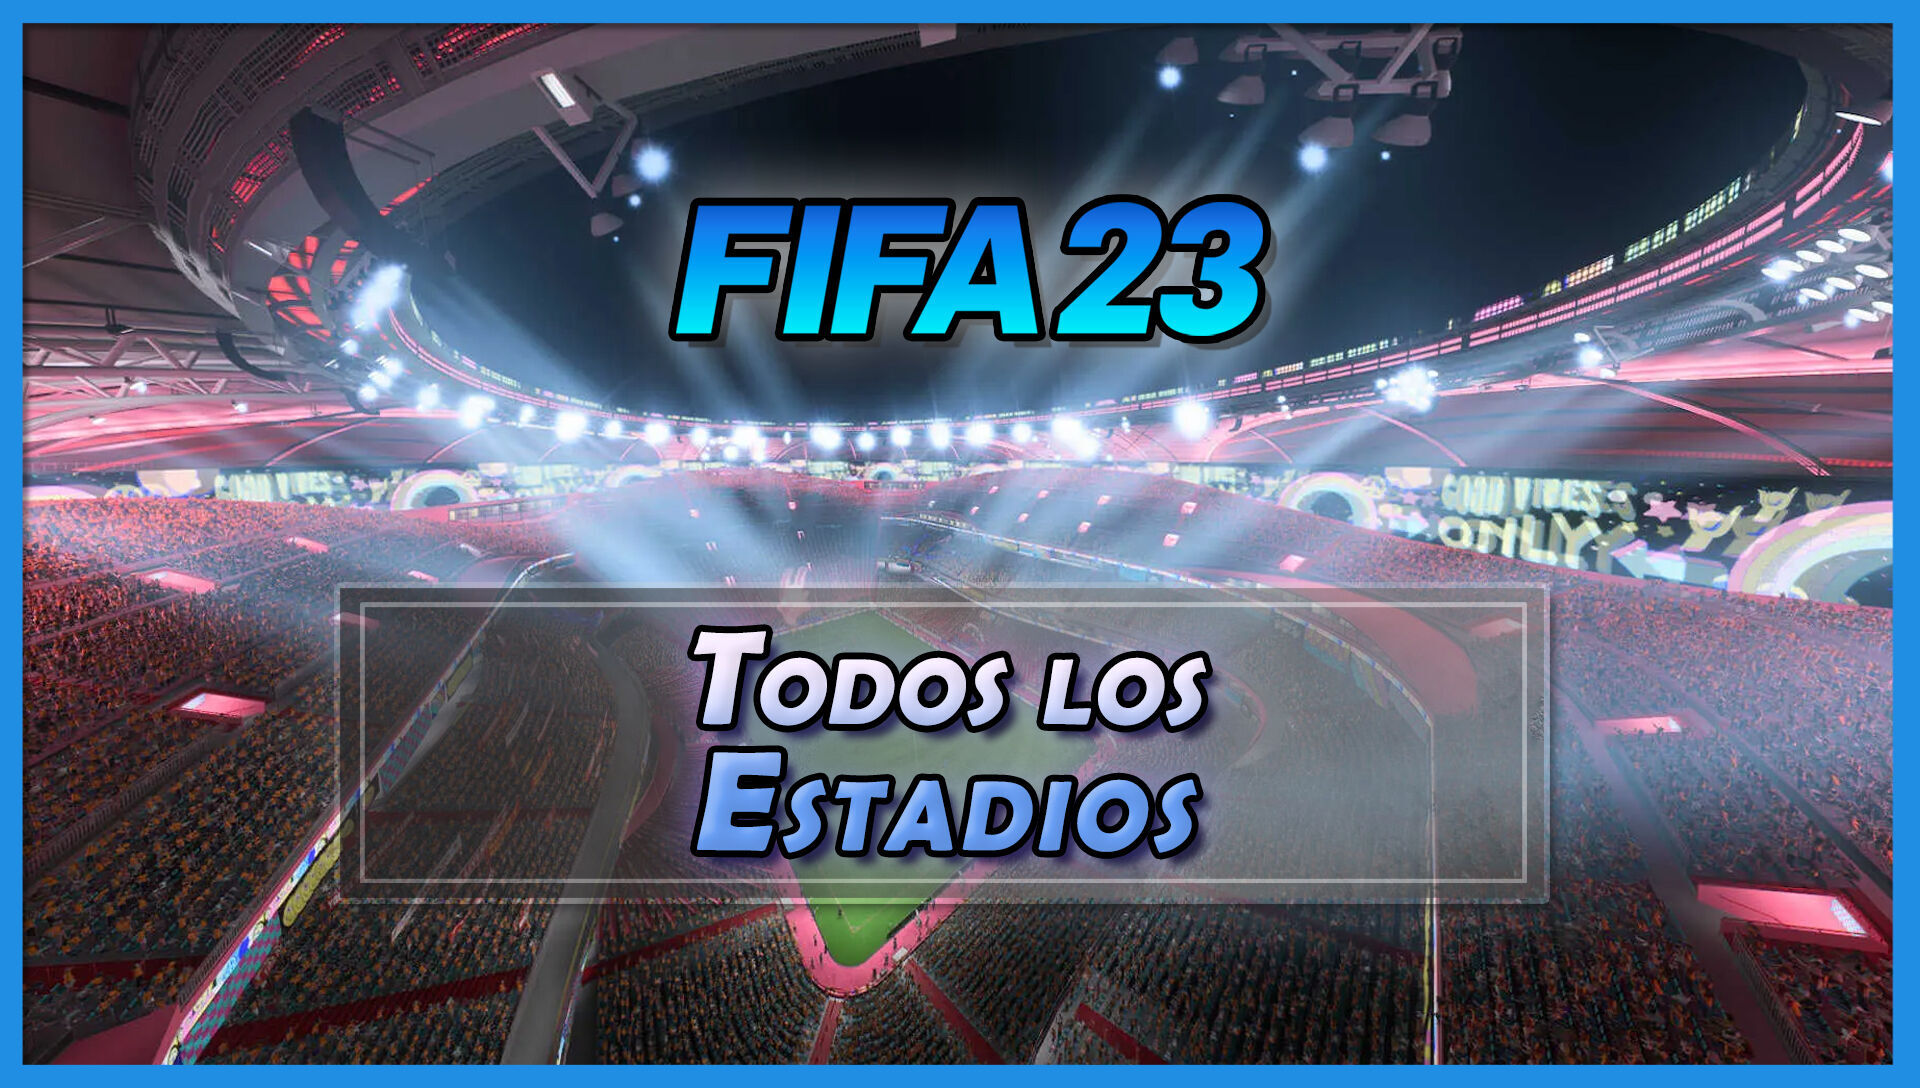 FIFA 23 OFICIAL 19 MIL JOGADORES 700 TIMES 105 ESTÁDIOS 